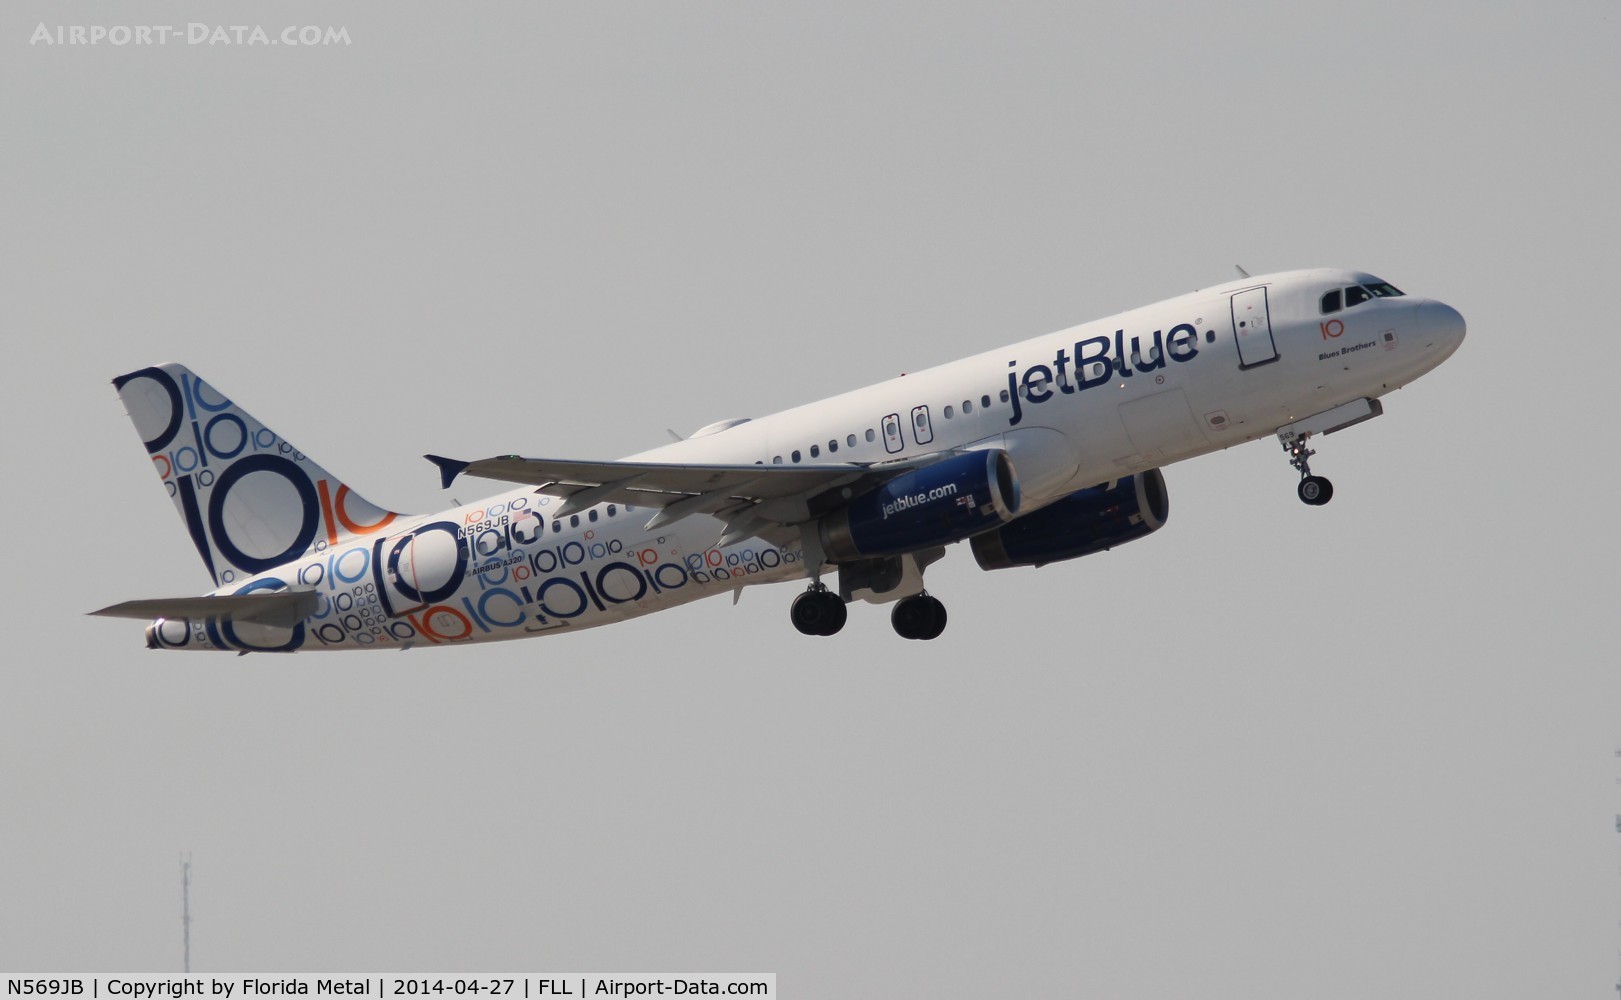 N569JB, 2003 Airbus A320-232 C/N 2075, Jet Blue 10 years